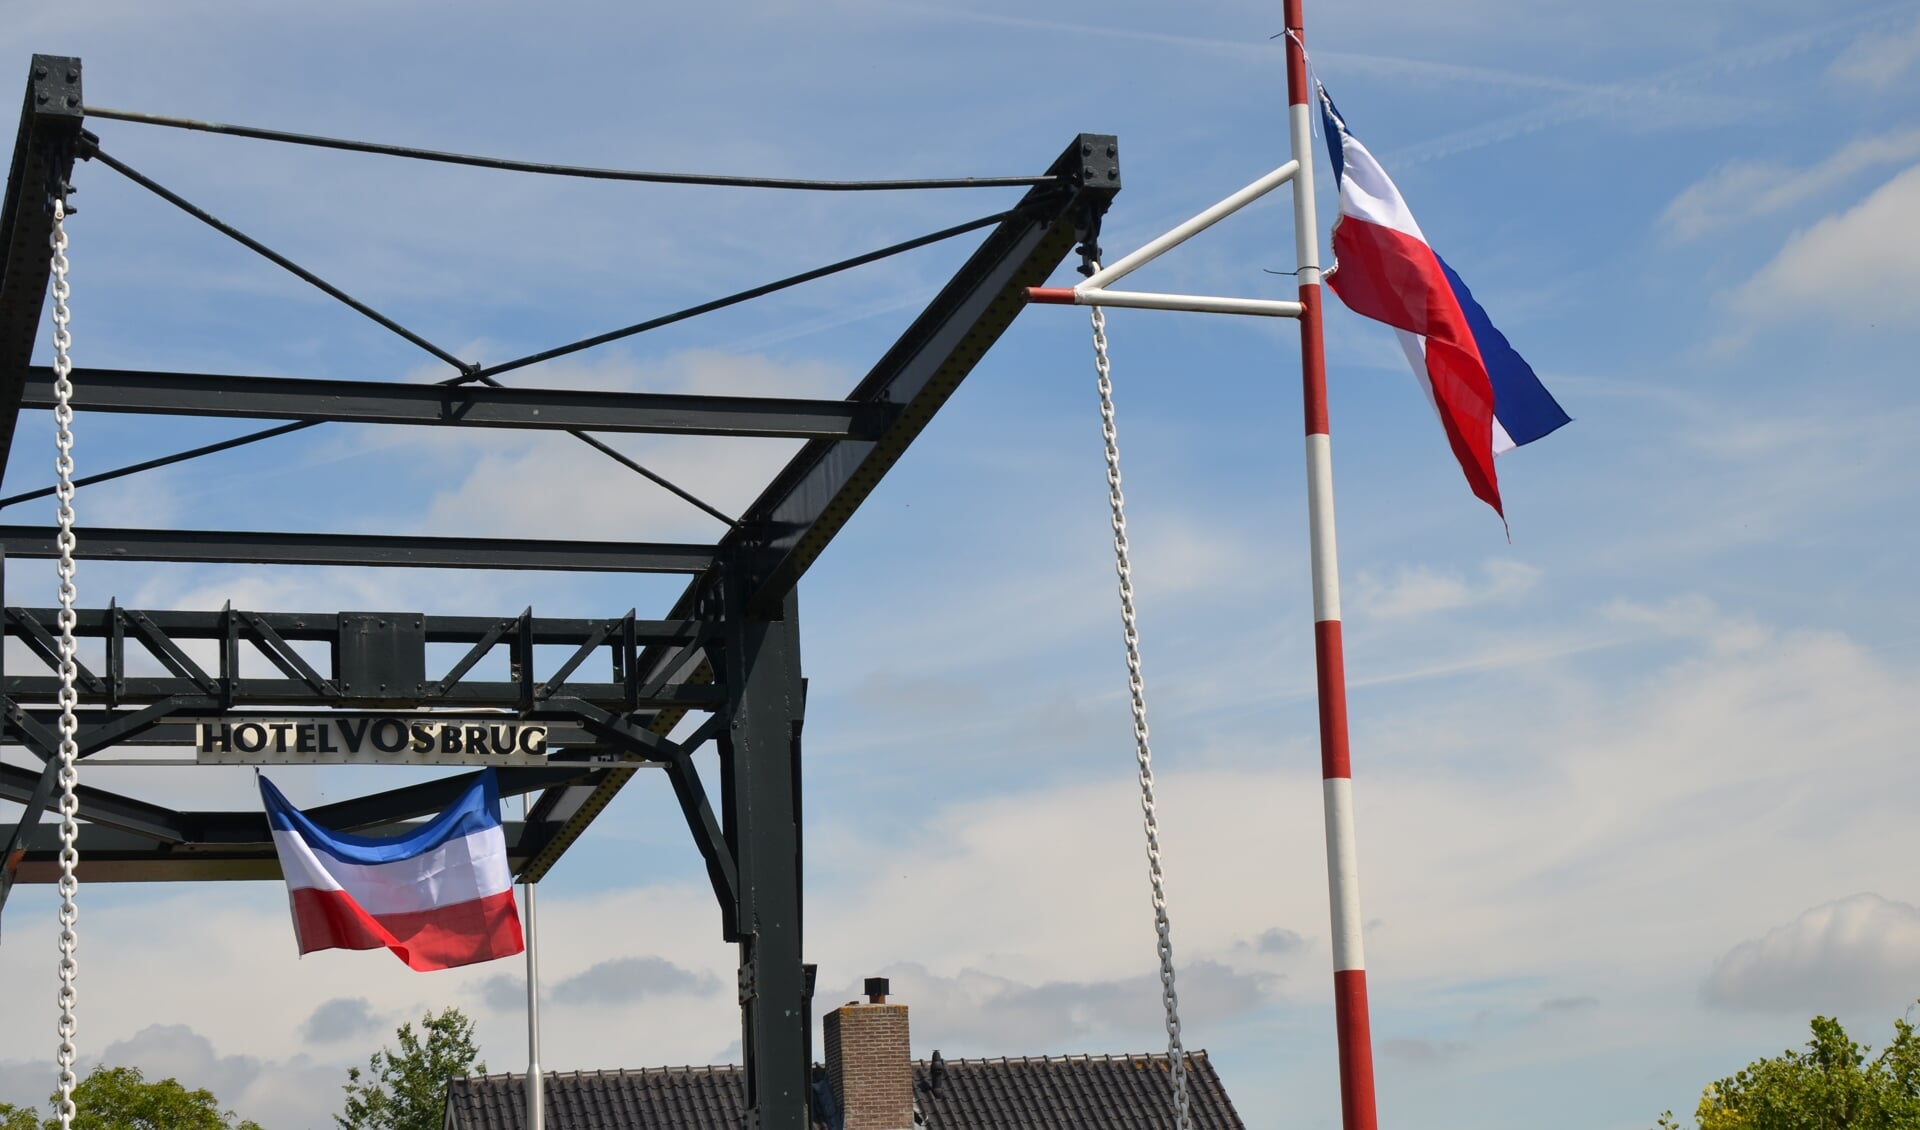 Ook aan de Hotel Vosbrug in Zevenhuizen hangen vlaggen op z'n kop.  